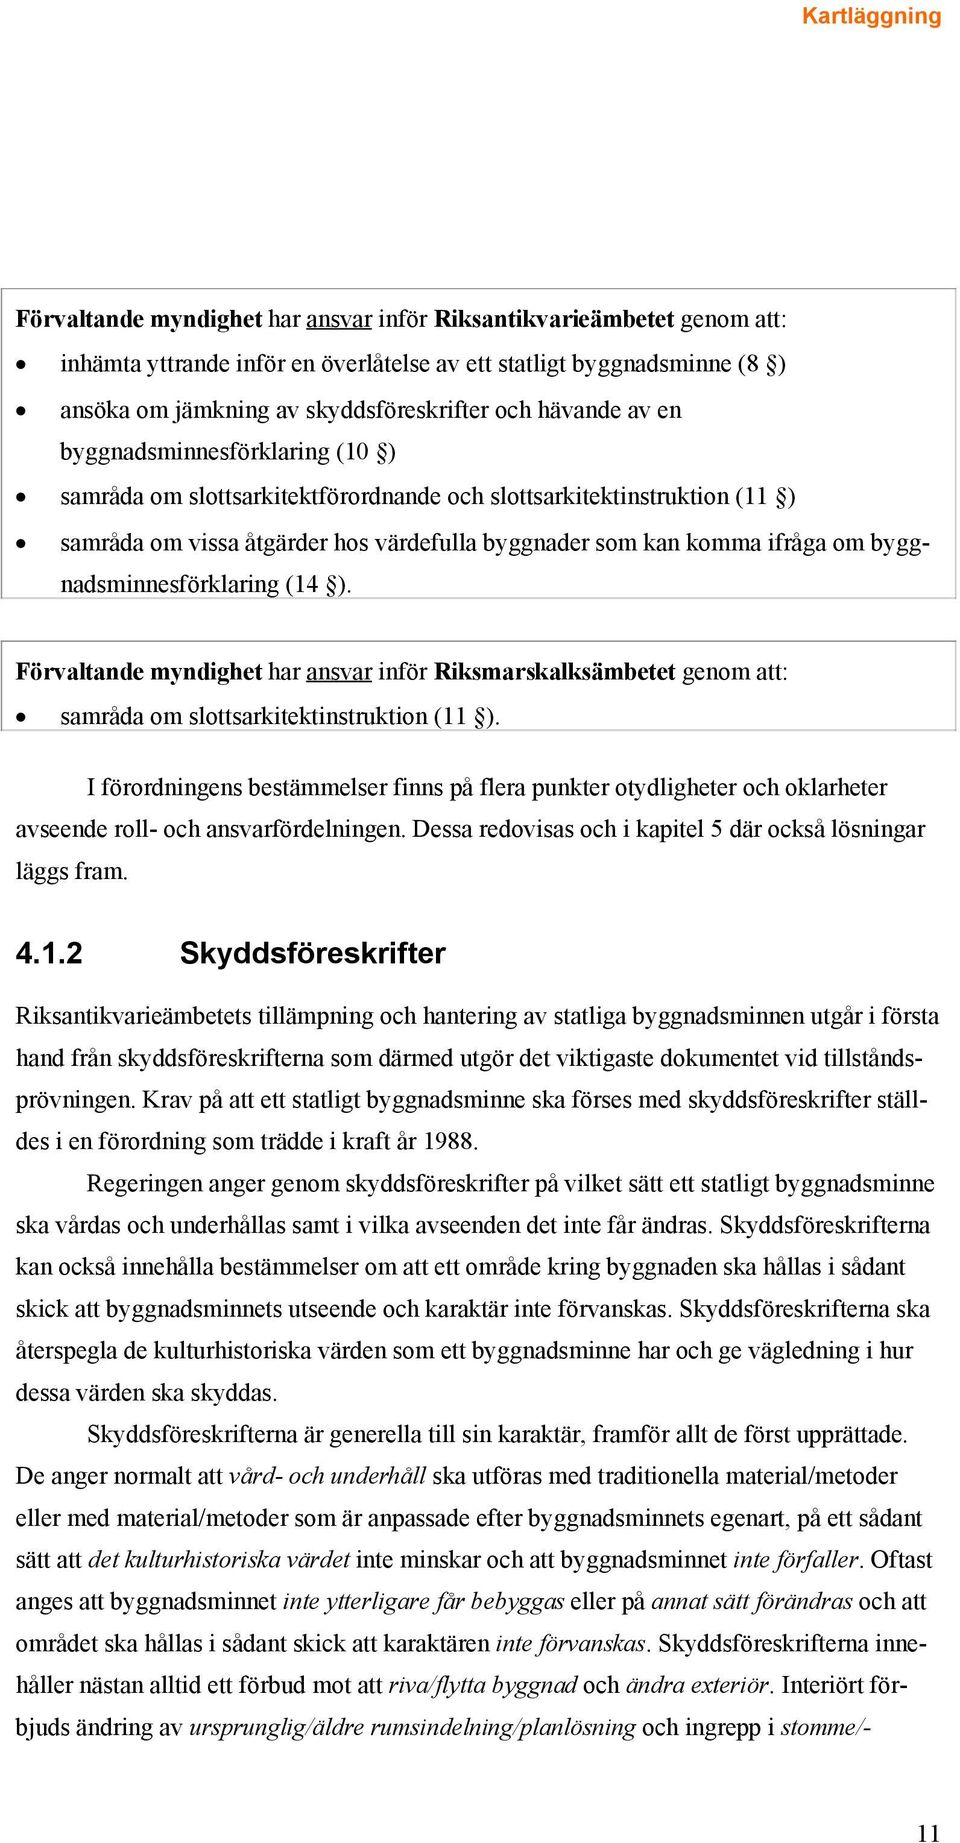 byggnadsminnesförklaring (14 ). Förvaltande myndighet har ansvar inför Riksmarskalksämbetet genom att: samråda om slottsarkitektinstruktion (11 ).